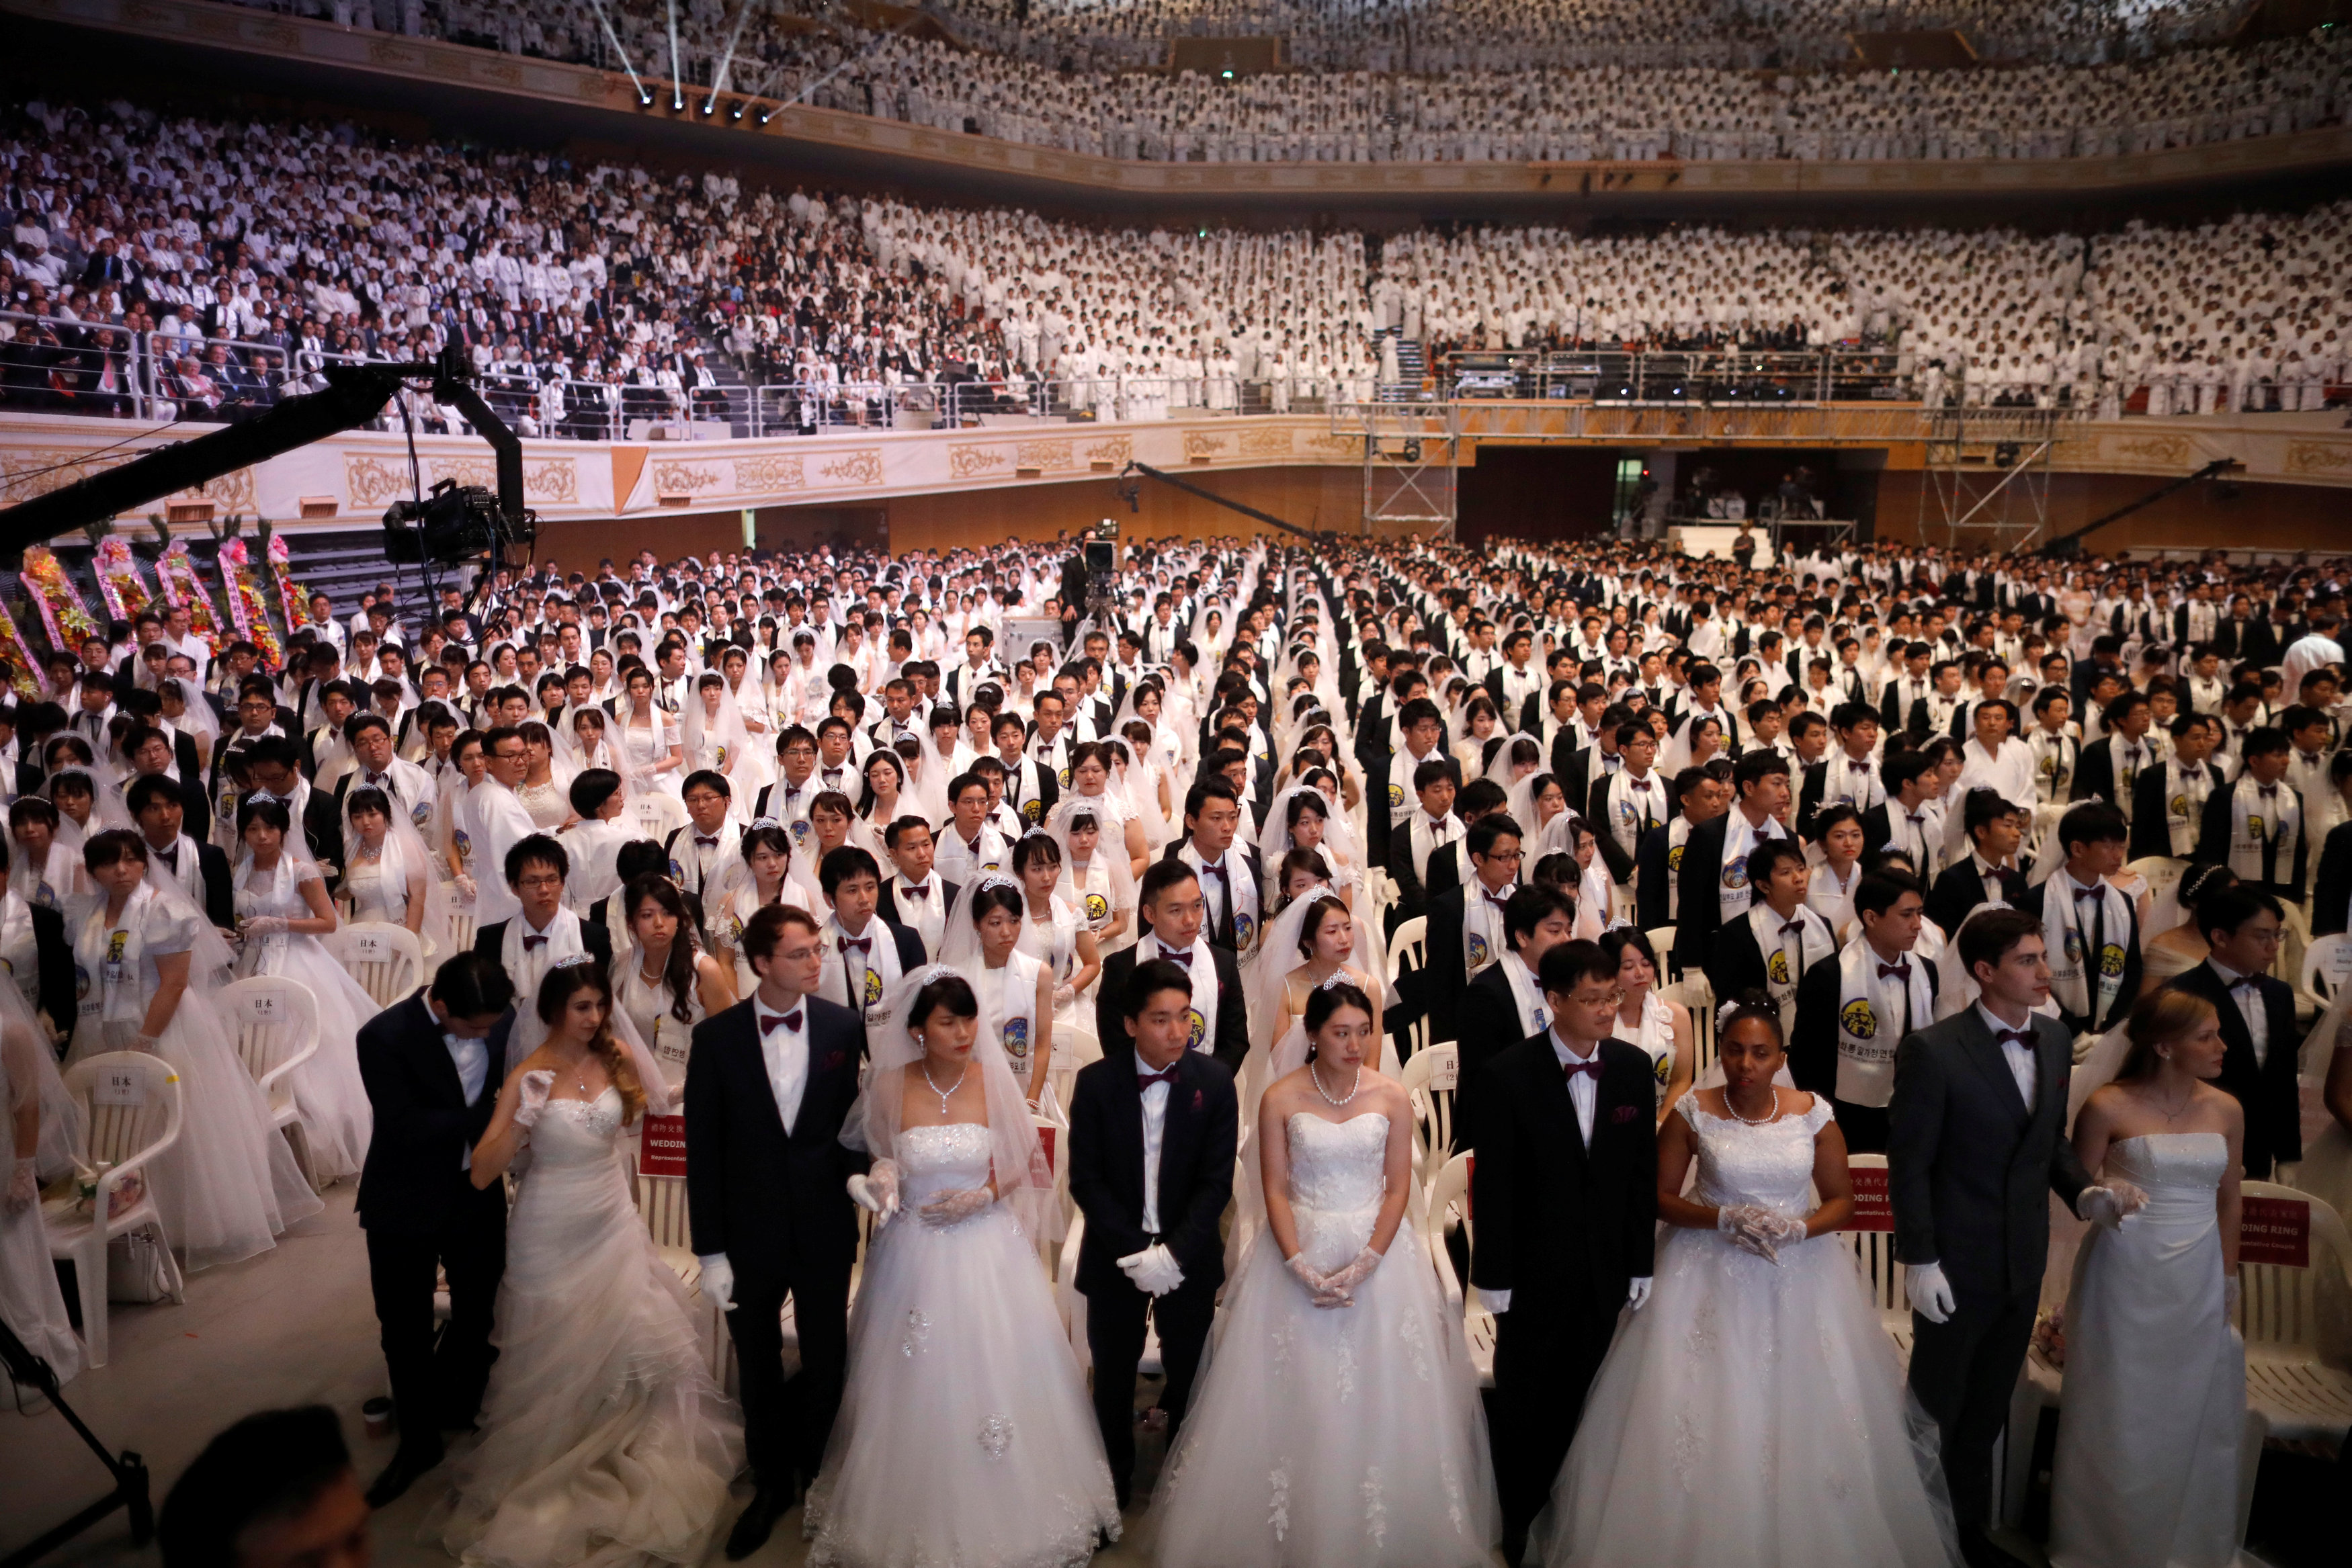 عدد كبير من العرائس والعرسان يحتفلن بزاجهن الجماعى